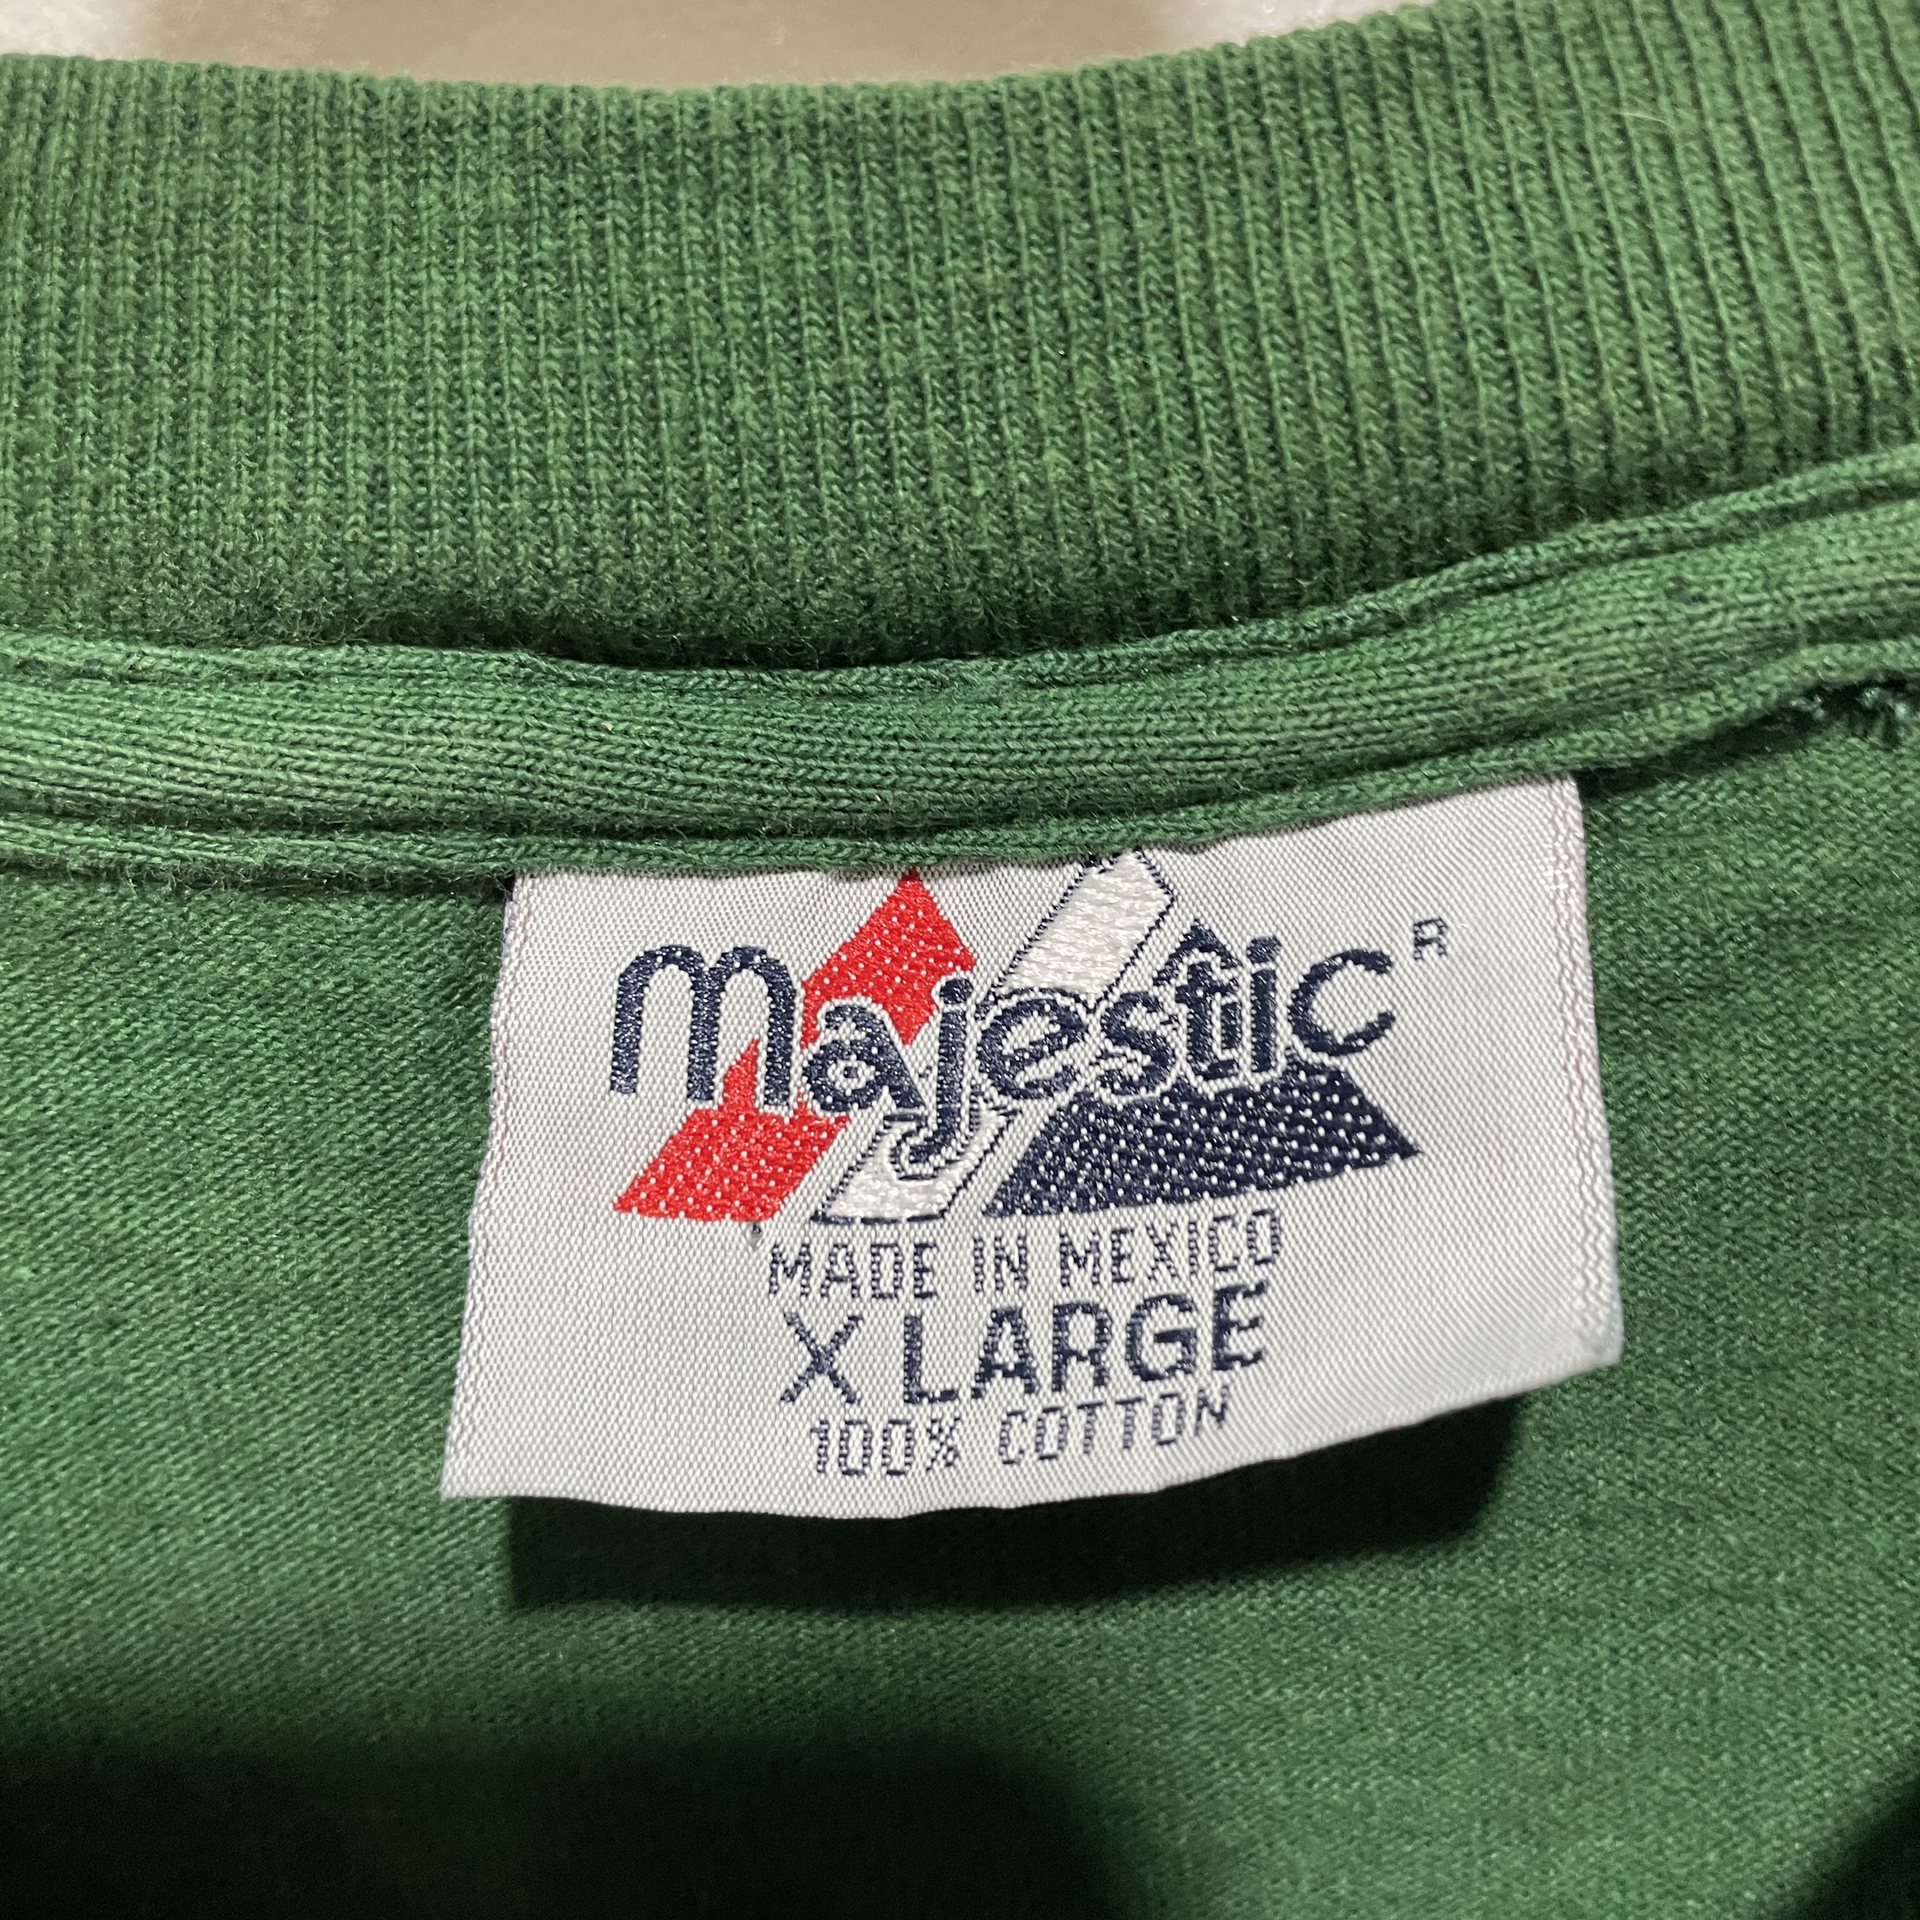 送料無料』90s グリーンベイパッカーズ 刺繍ロゴTシャツ XL 緑 